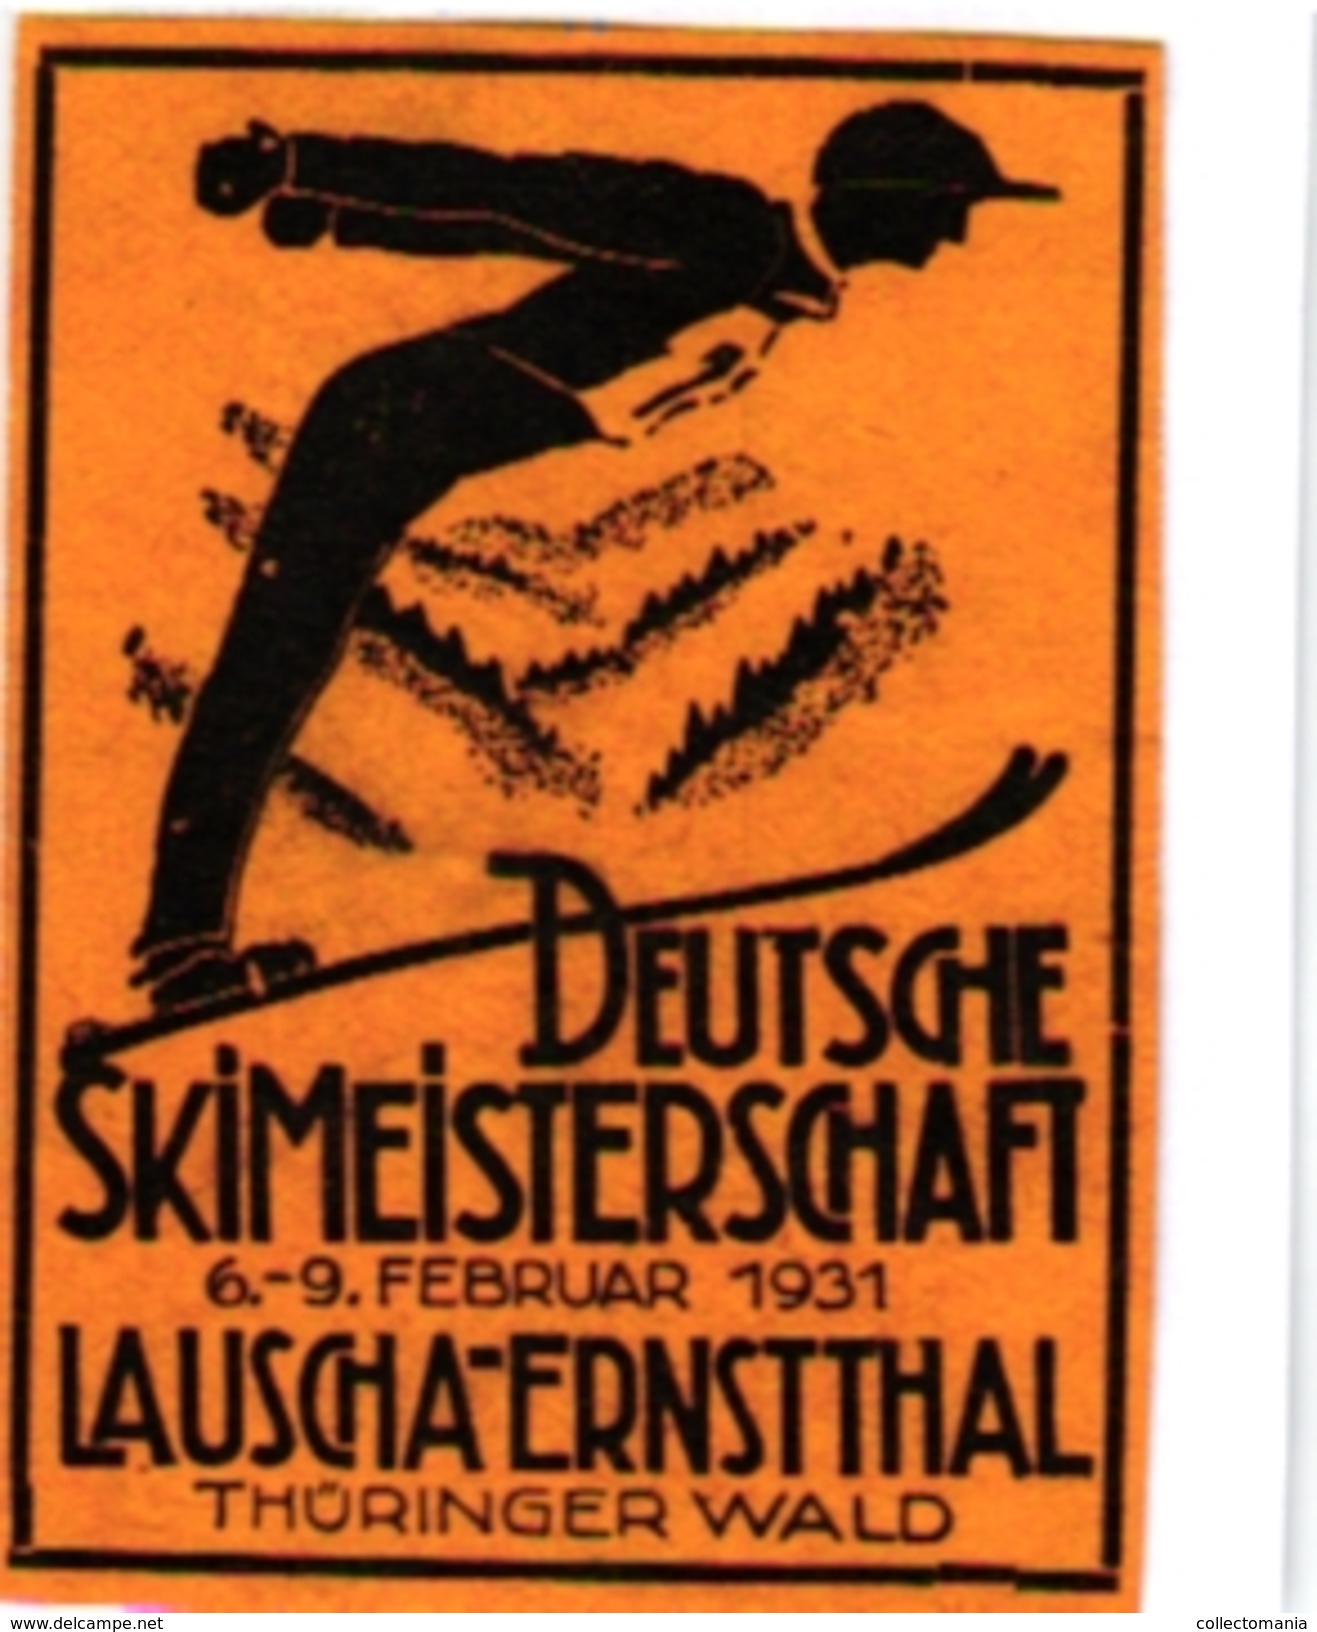 1 Sluitzegel Poster Stamp  Deutsche Skimeisterschaft 1931 Lauscha-Ernstthal THURINGER WALD  SKI  4,3cmx 6cm - Skisport